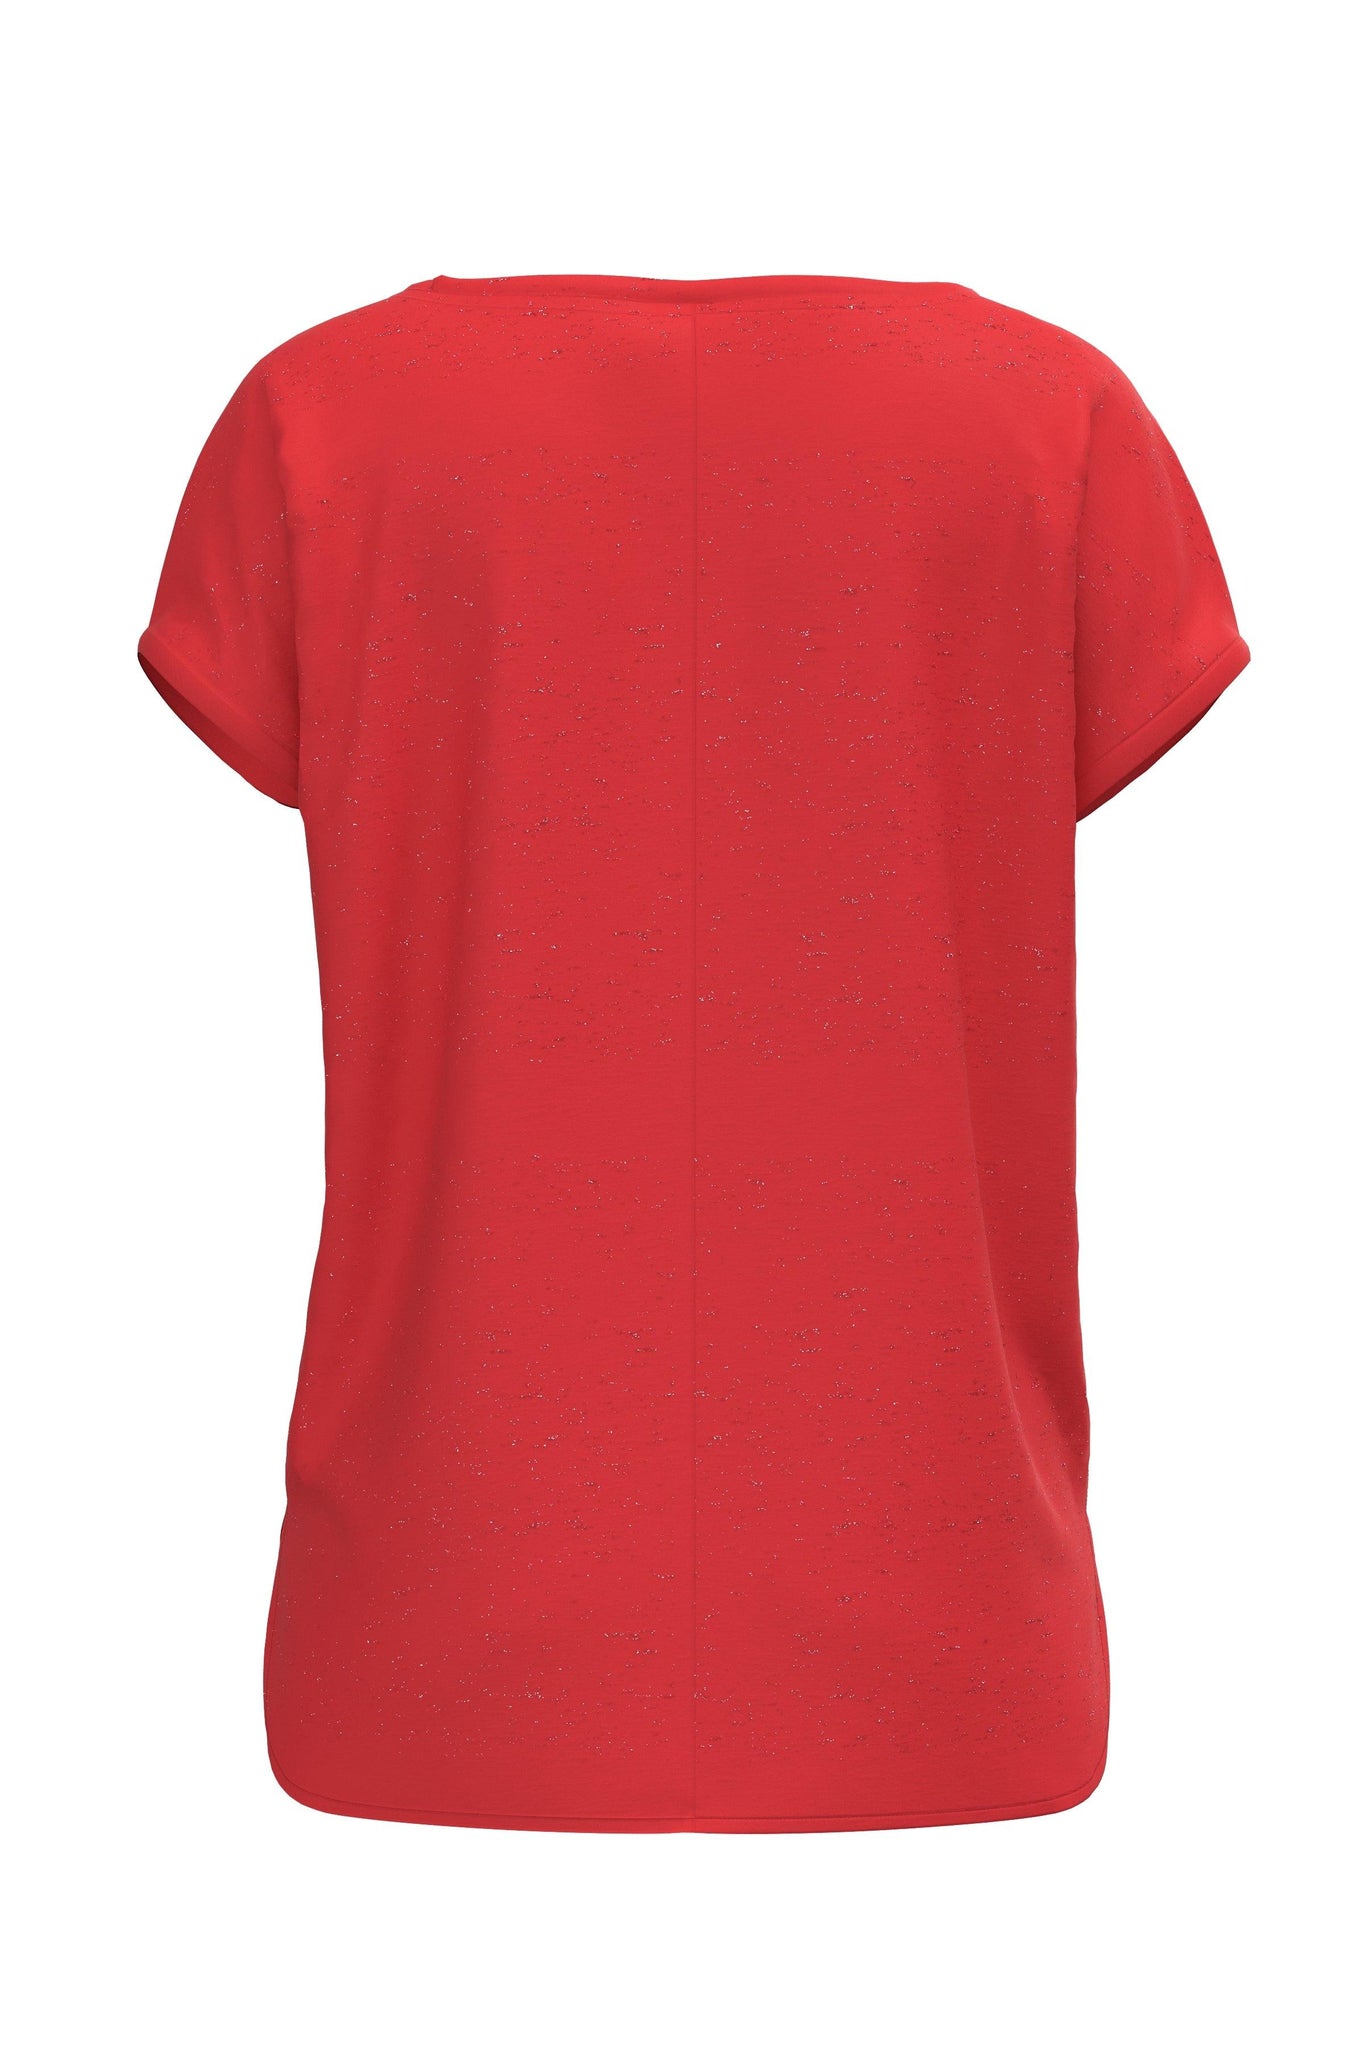 Camiseta ICHI Rebel Poppy Red - ECRU